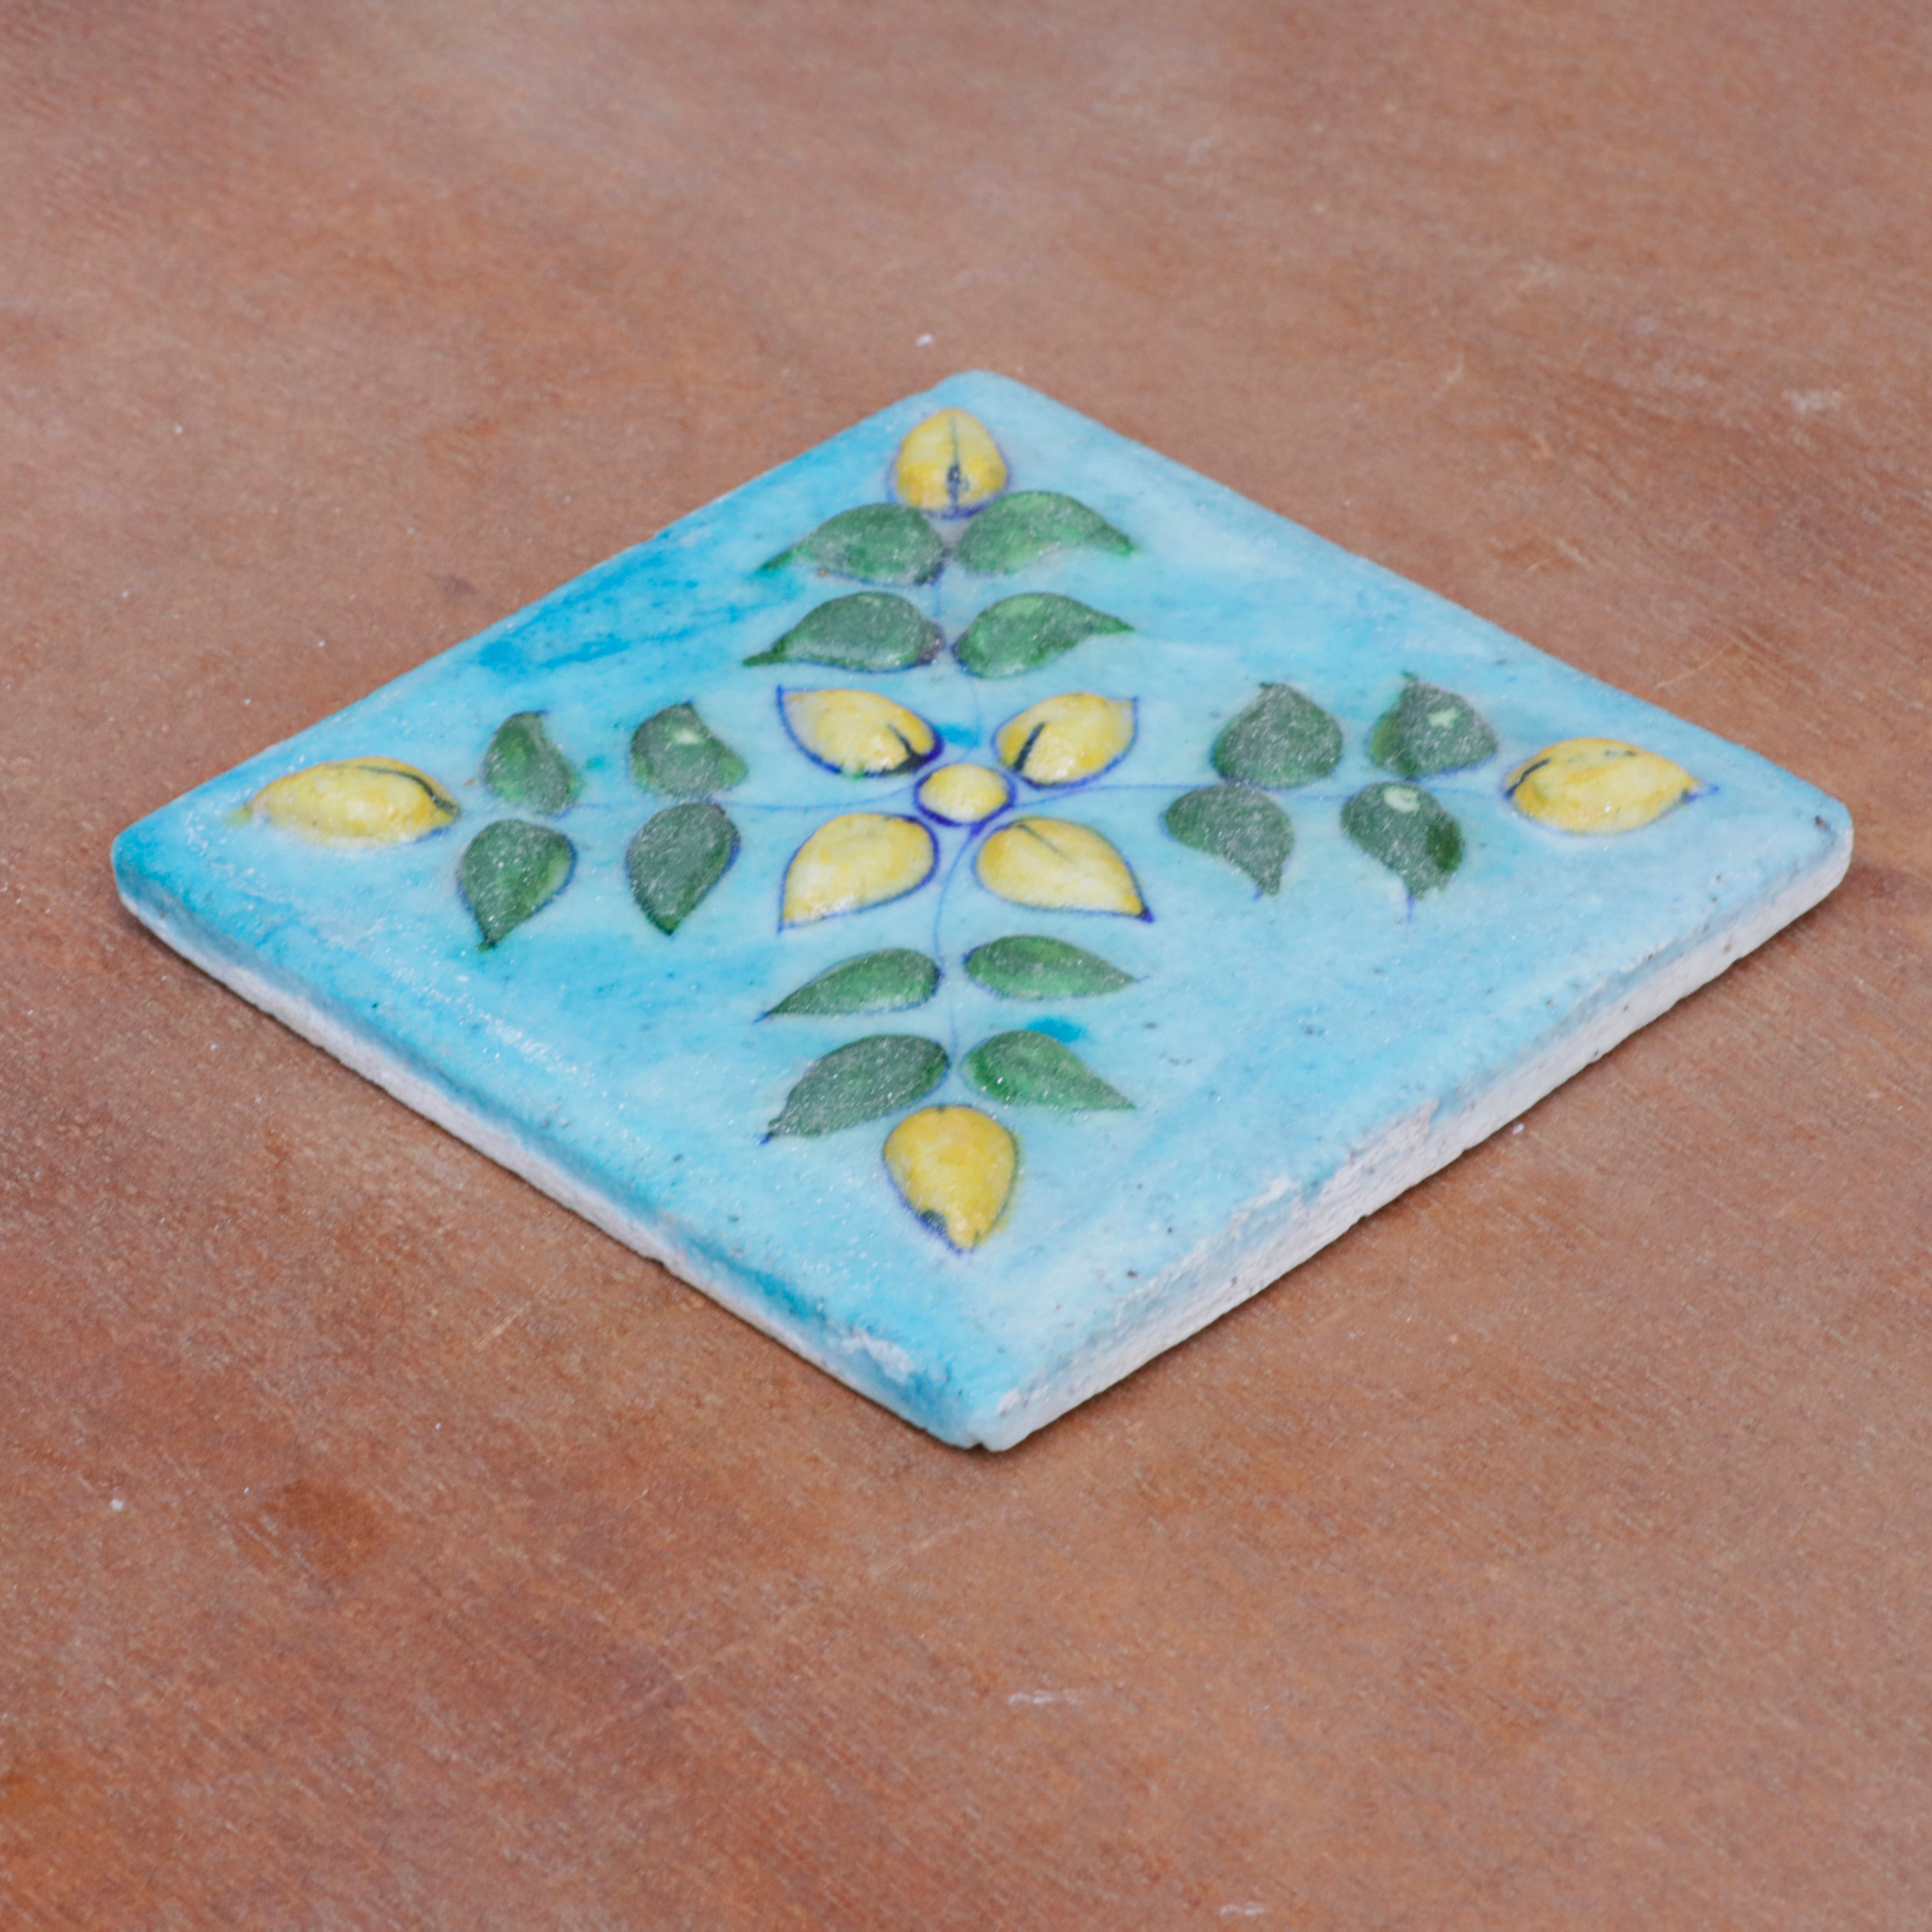 Classic Aesthetic Embossed Flower Designed Ceramic Square Tile Set of 2 Ceramic Tile